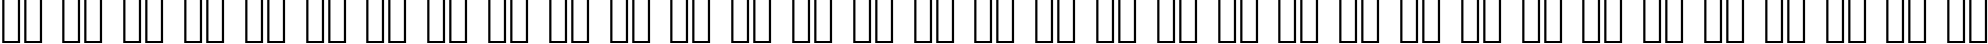 Пример написания русского алфавита шрифтом Eurostile Bold